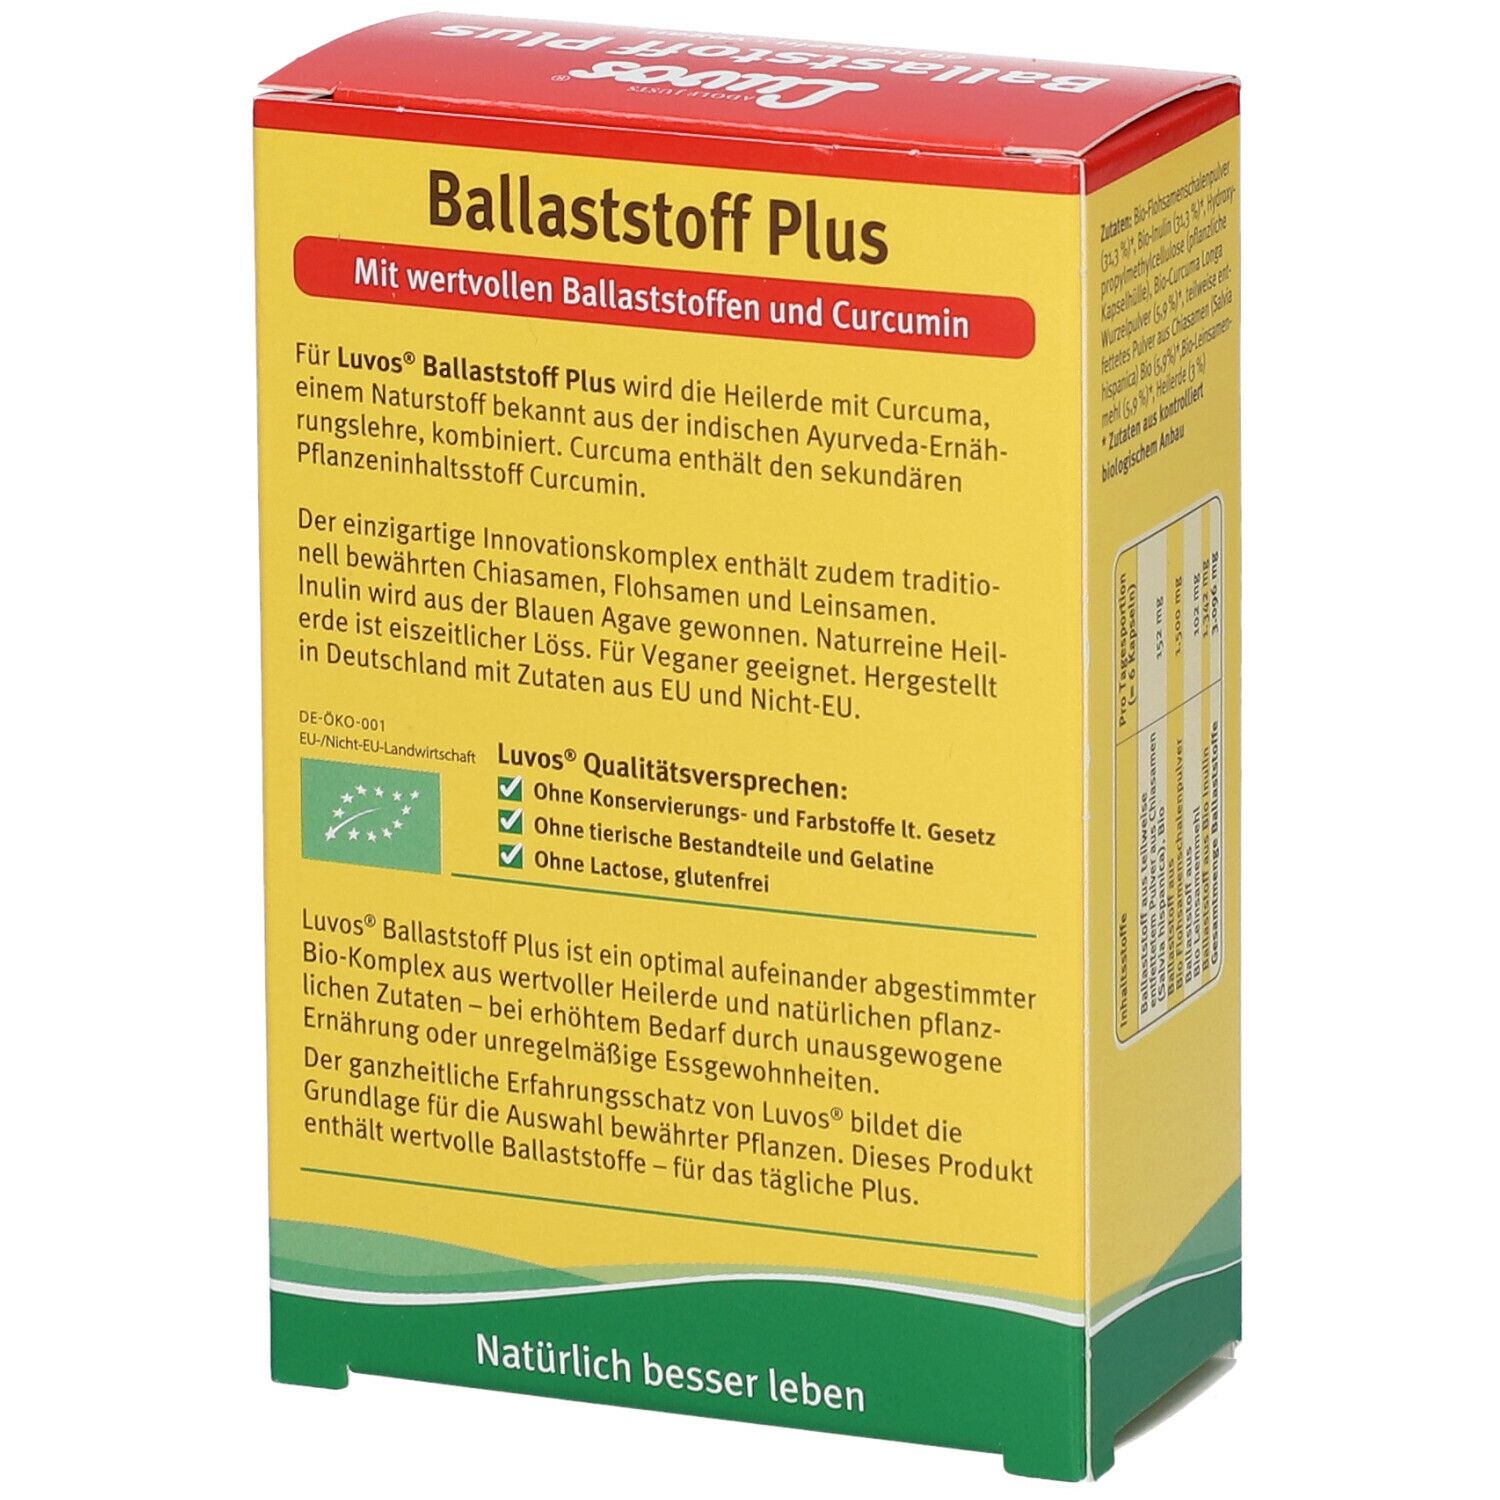 Luvos® Heilerde Bio Ballaststoff Plus